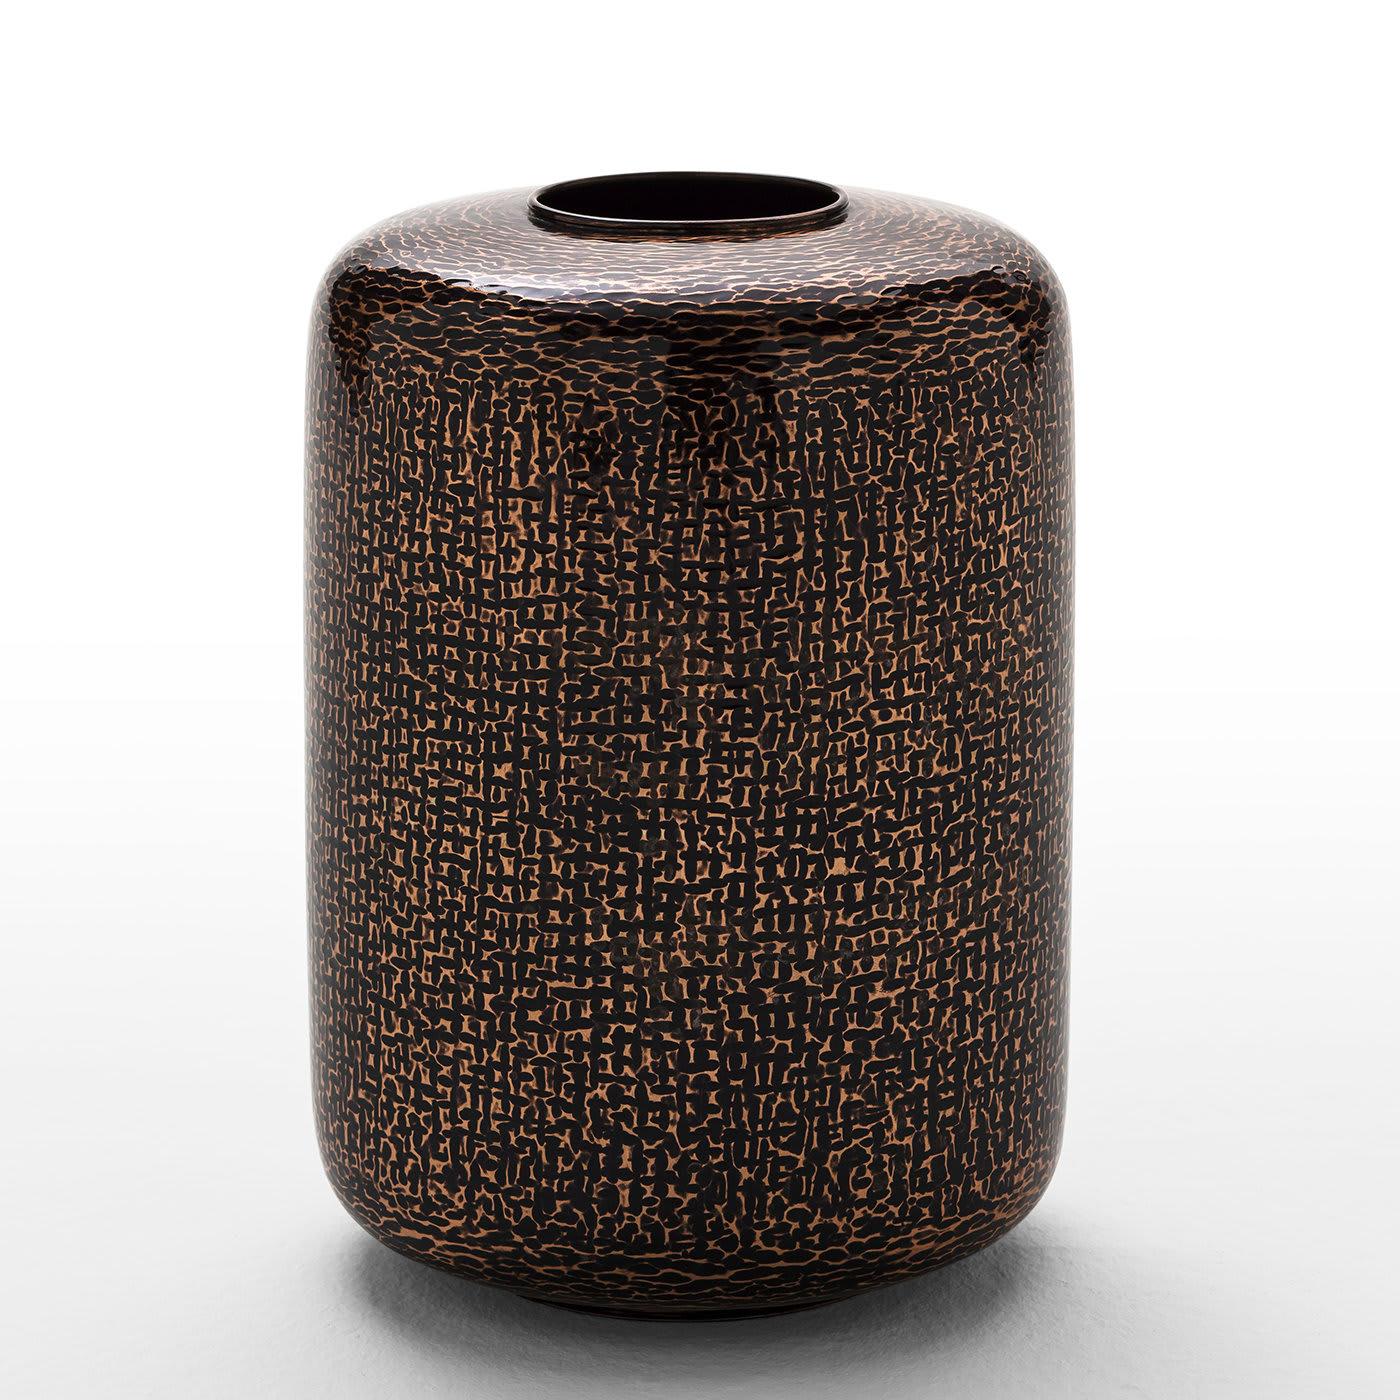 Nommé d'après sa silhouette mince et droite, ce vase exquis présente une forme cylindrique et un motif accrocheur créé par la combinaison du cuivre et du vernis bruni, qui imprégnera tout intérieur d'une allure étincelante.